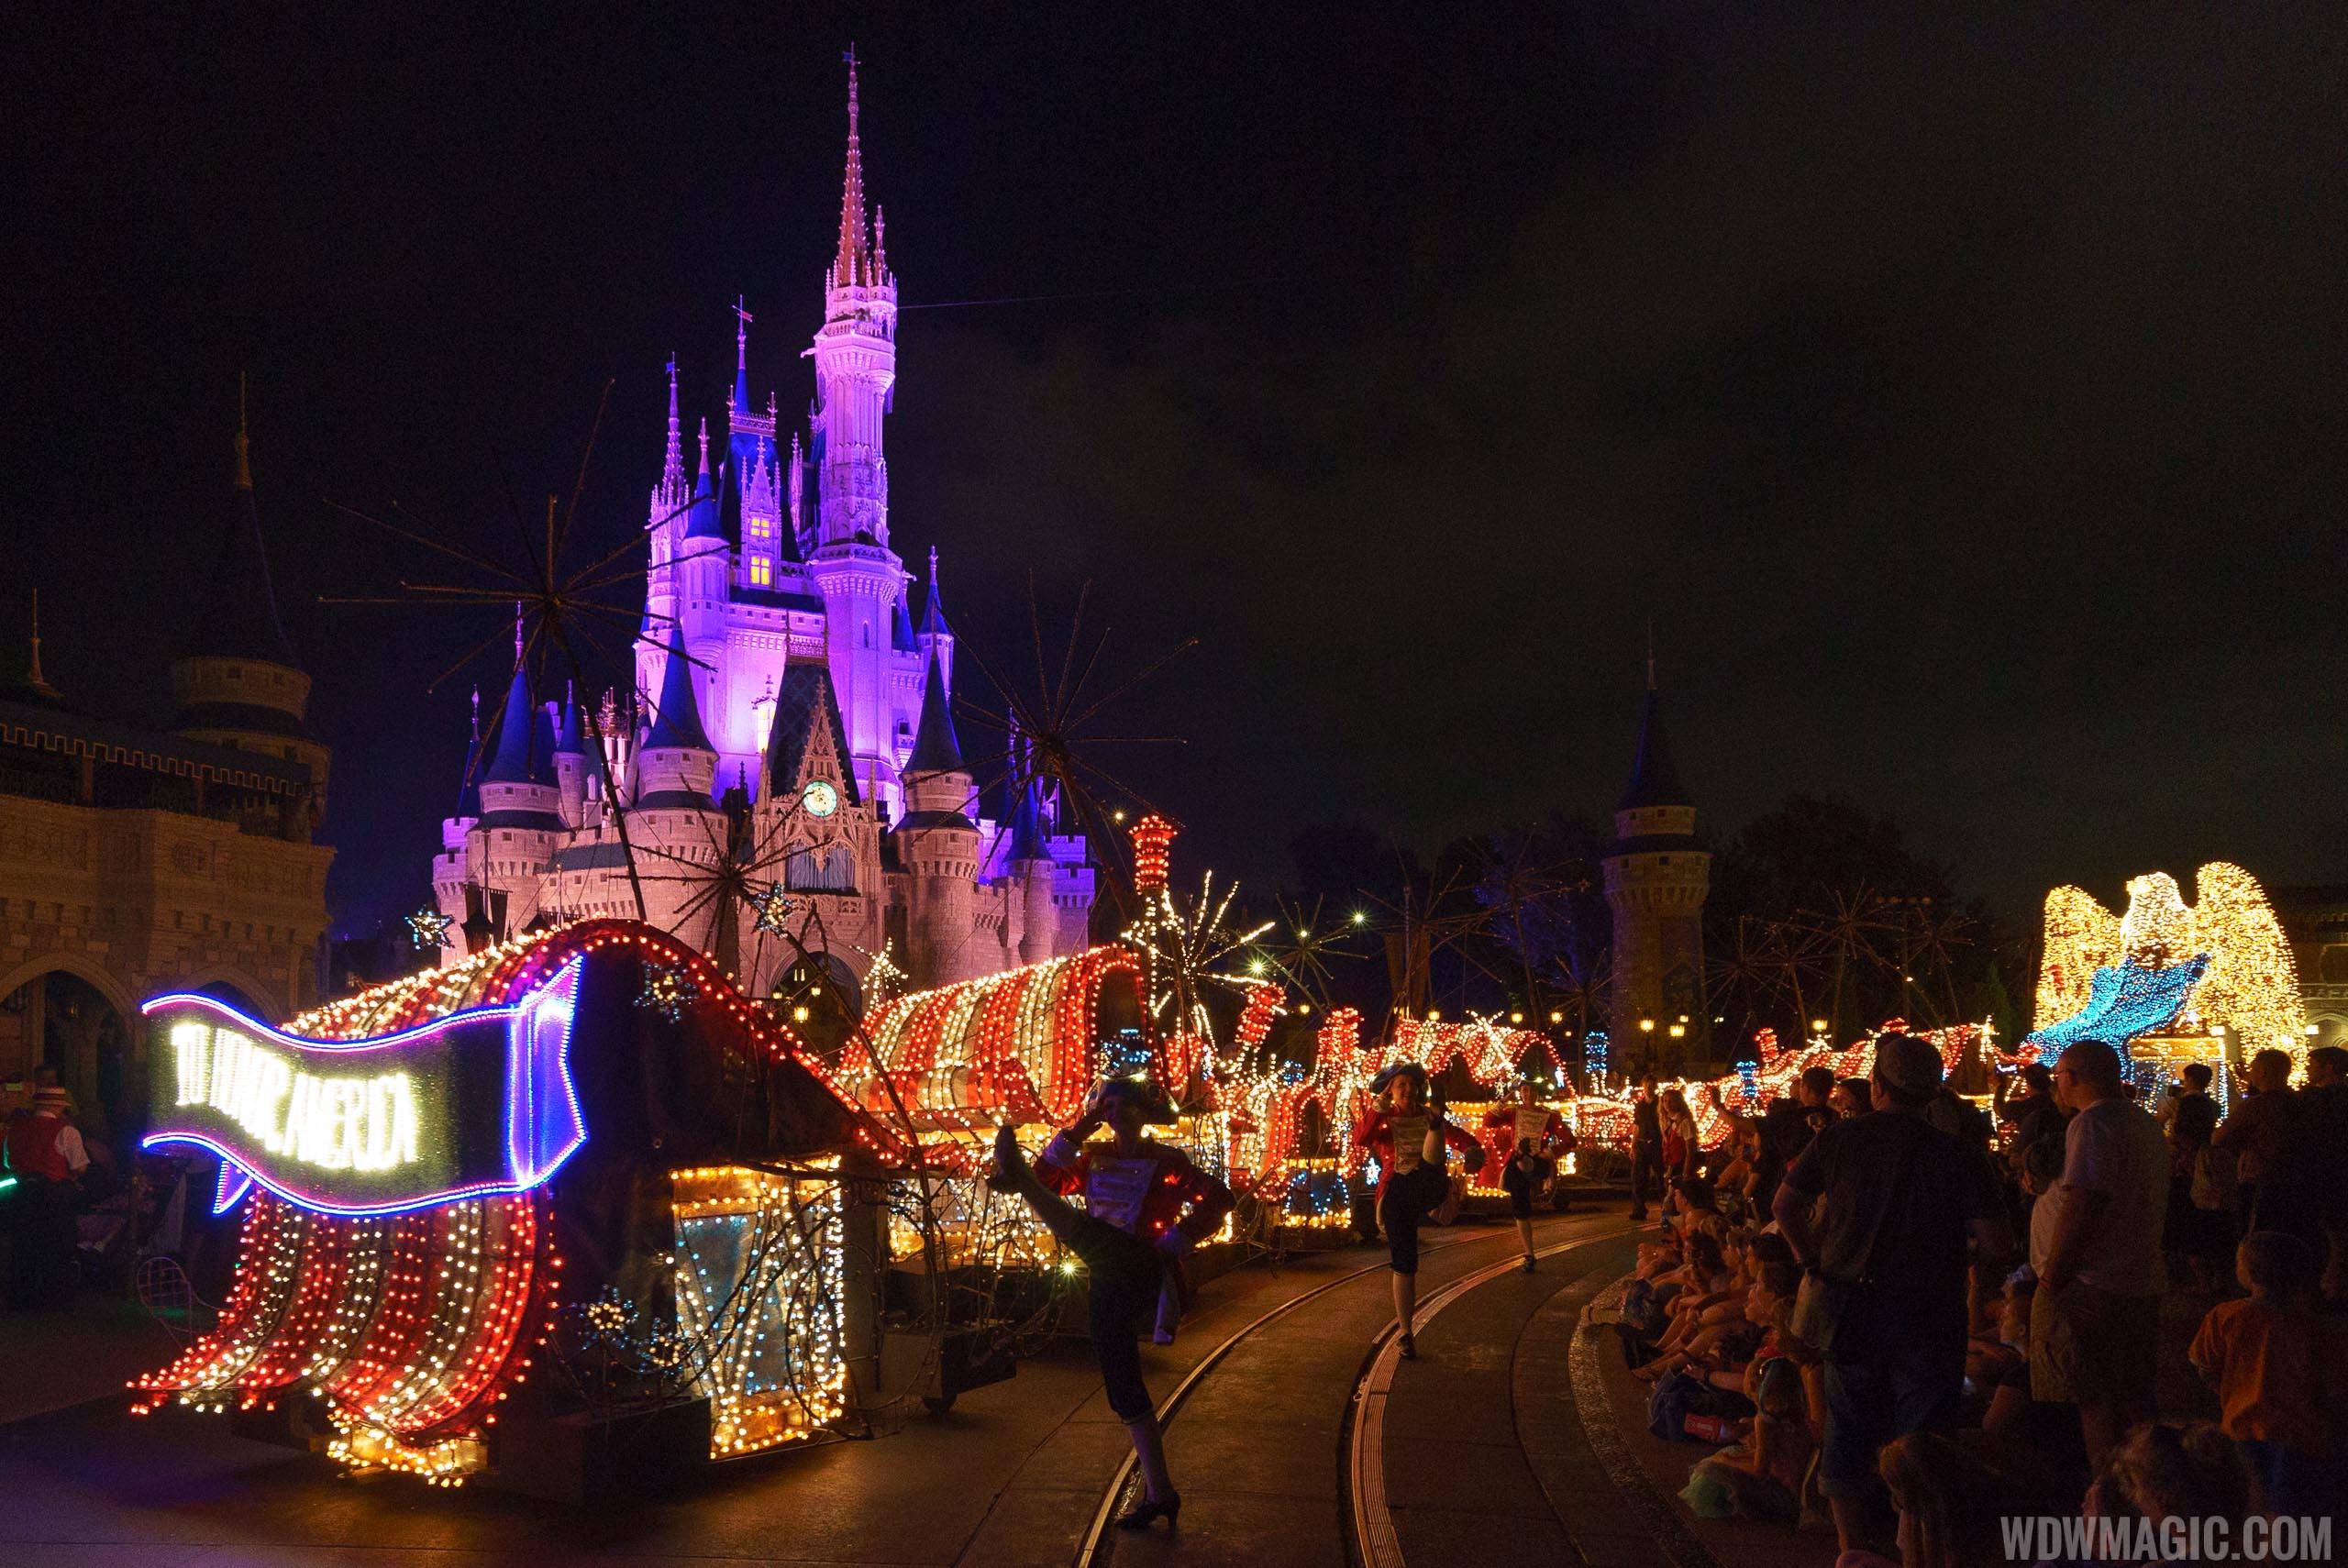 Classic Disney fun, timeless parade.